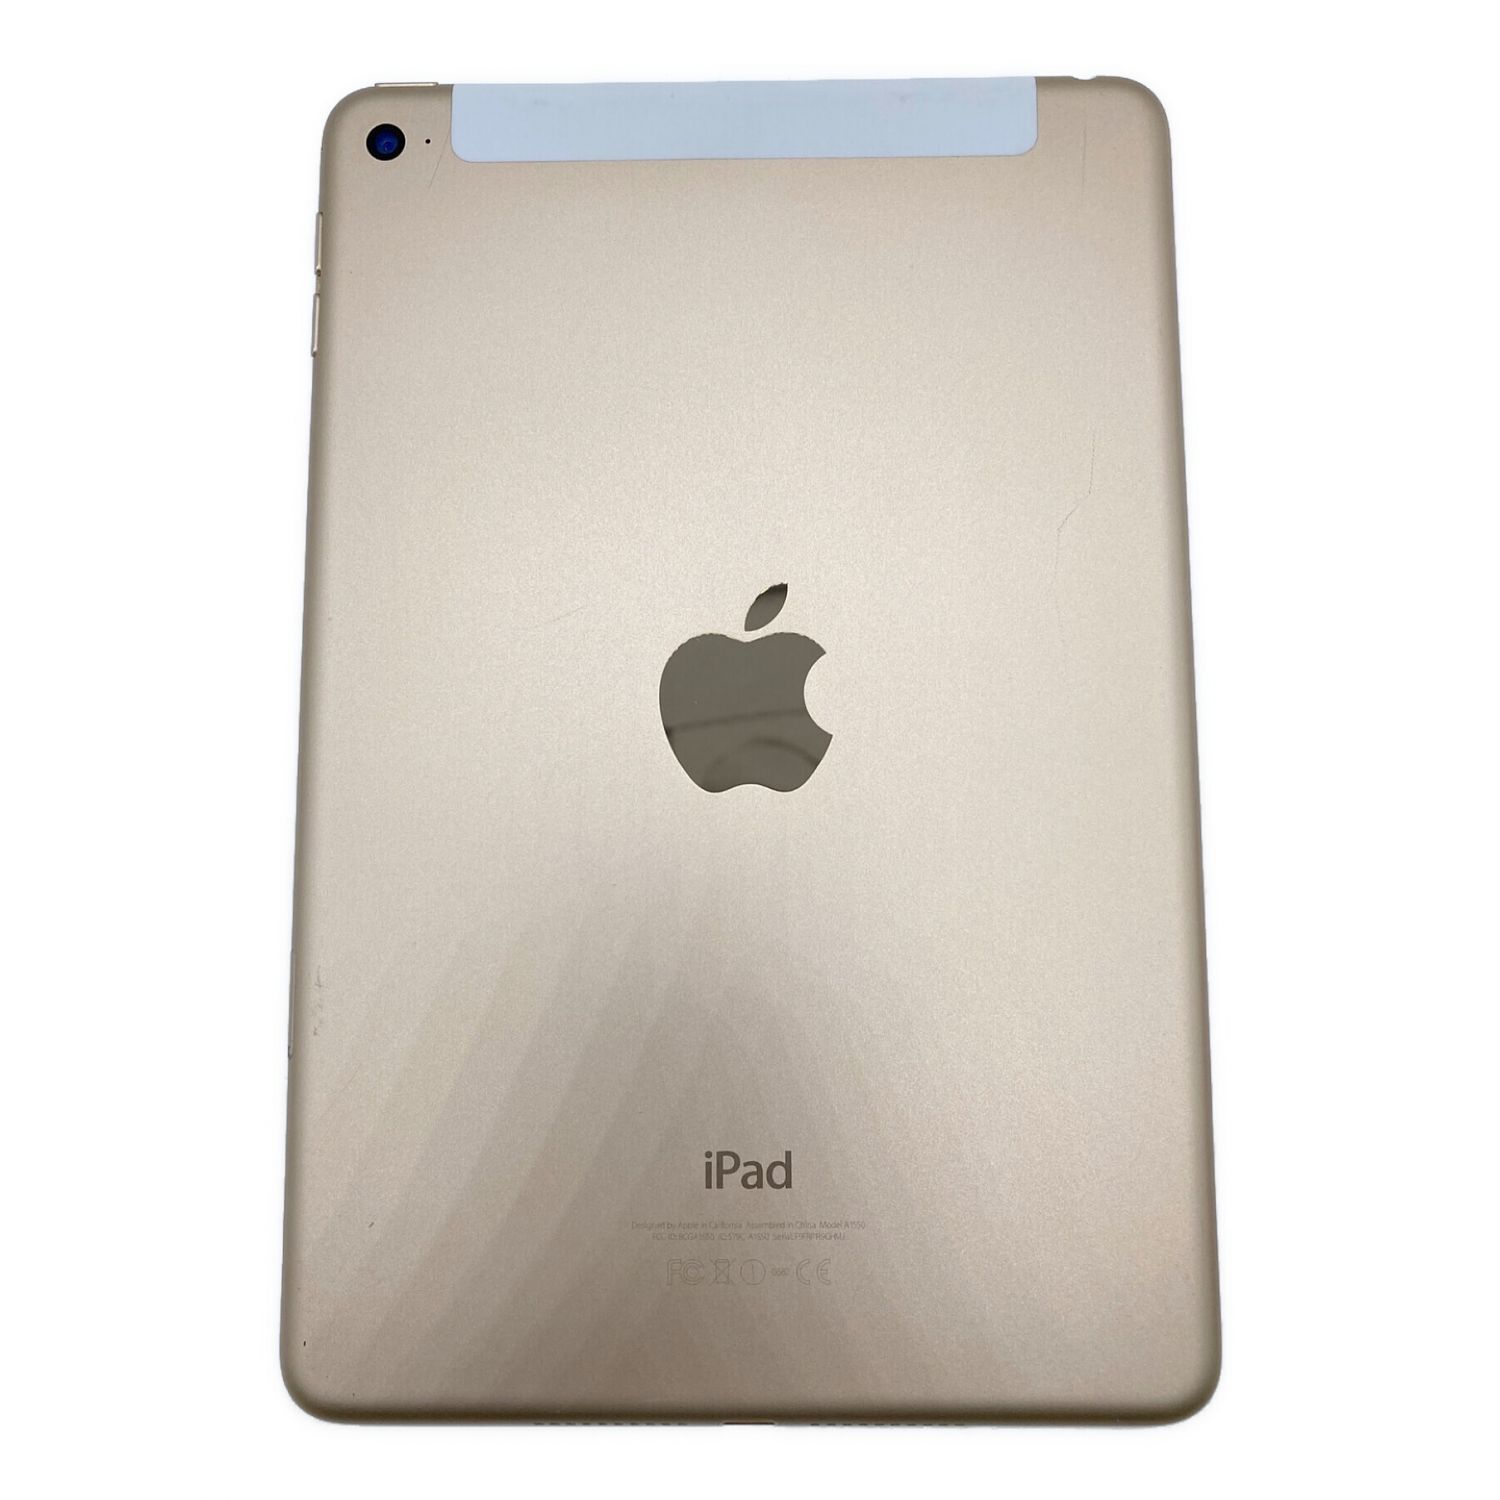 Apple (アップル) iPad mini(第4世代) 16GB docomo iOS MK712J/A ...